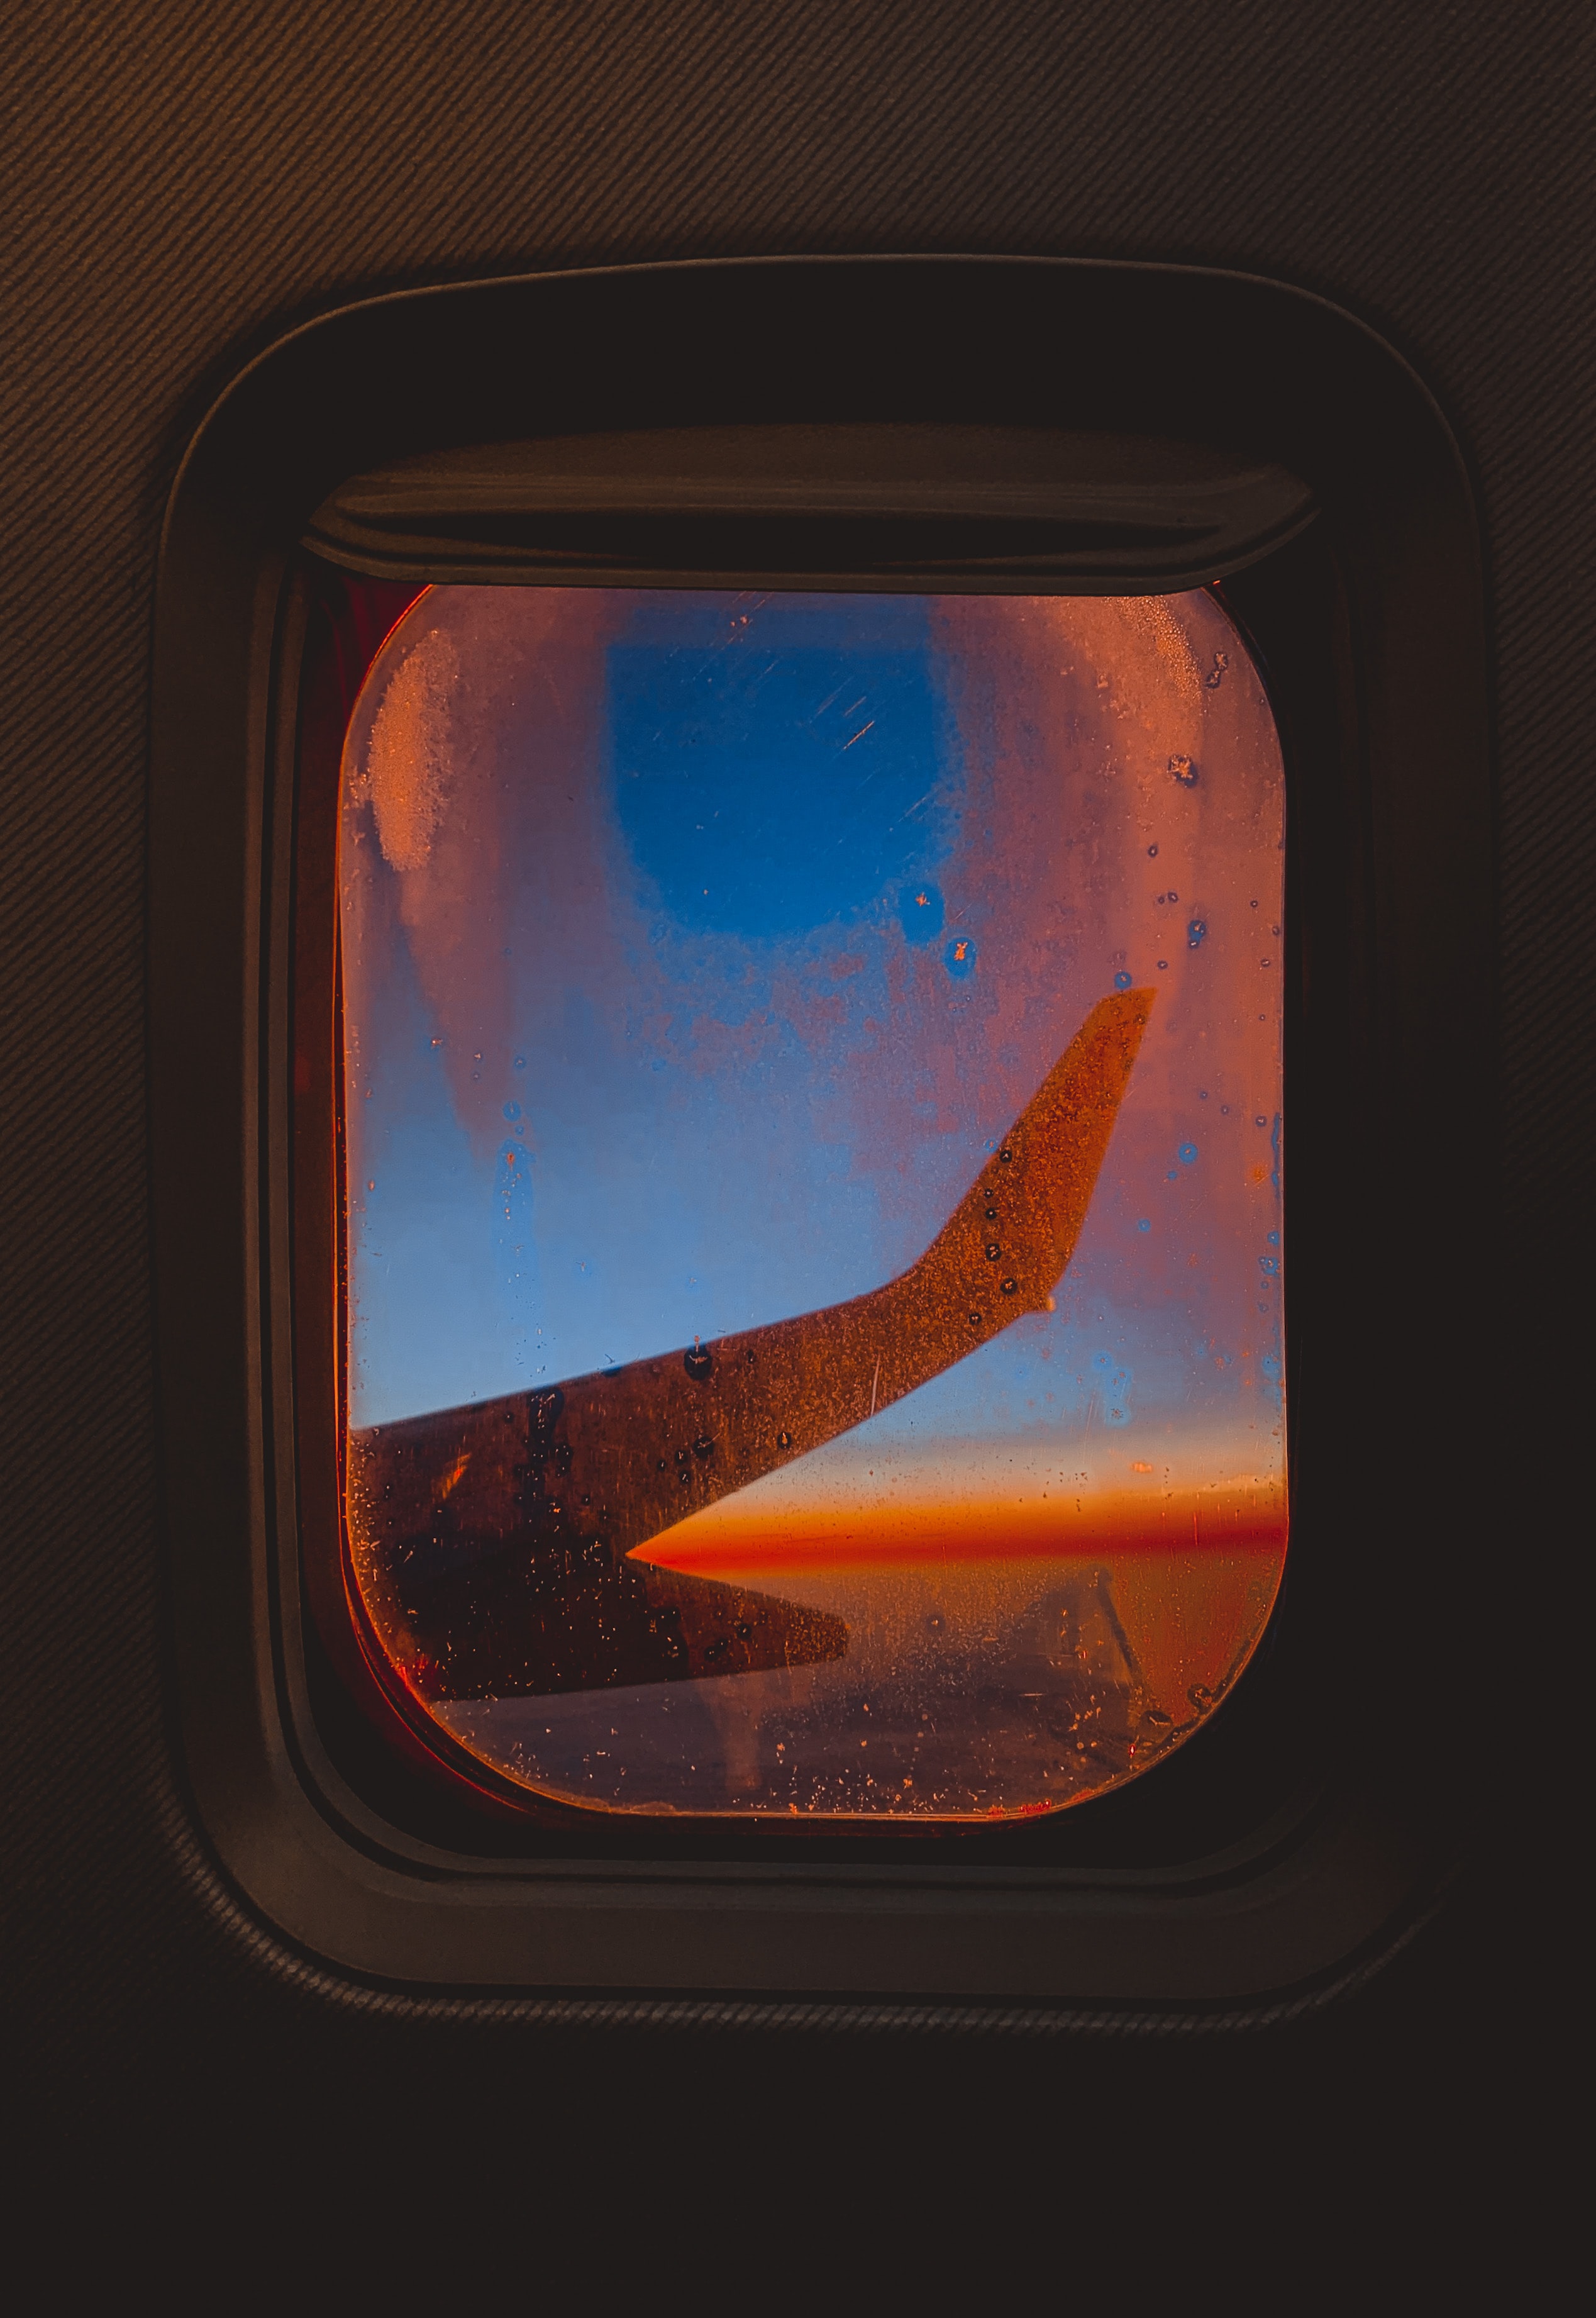 plane, miscellanea, miscellaneous, glass, window, porthole, airplane